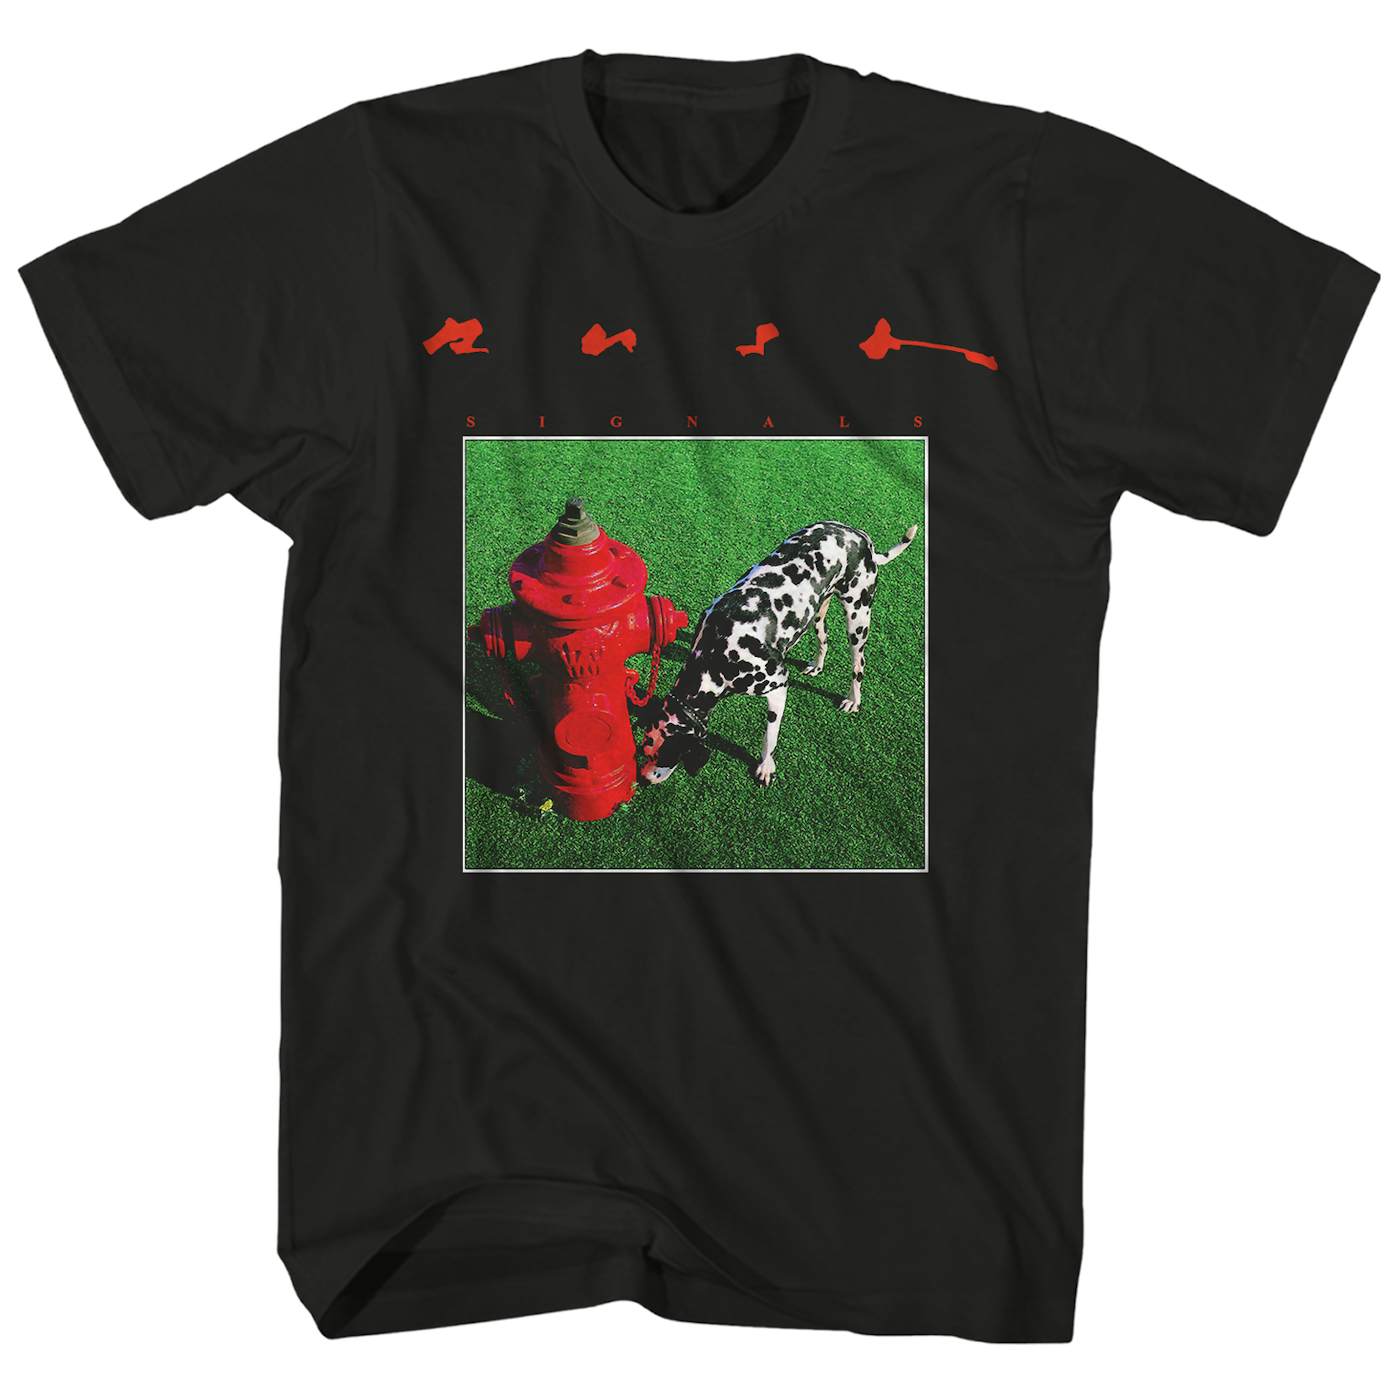 Rush T-Shirt | Signals Album Art Rush Shirt